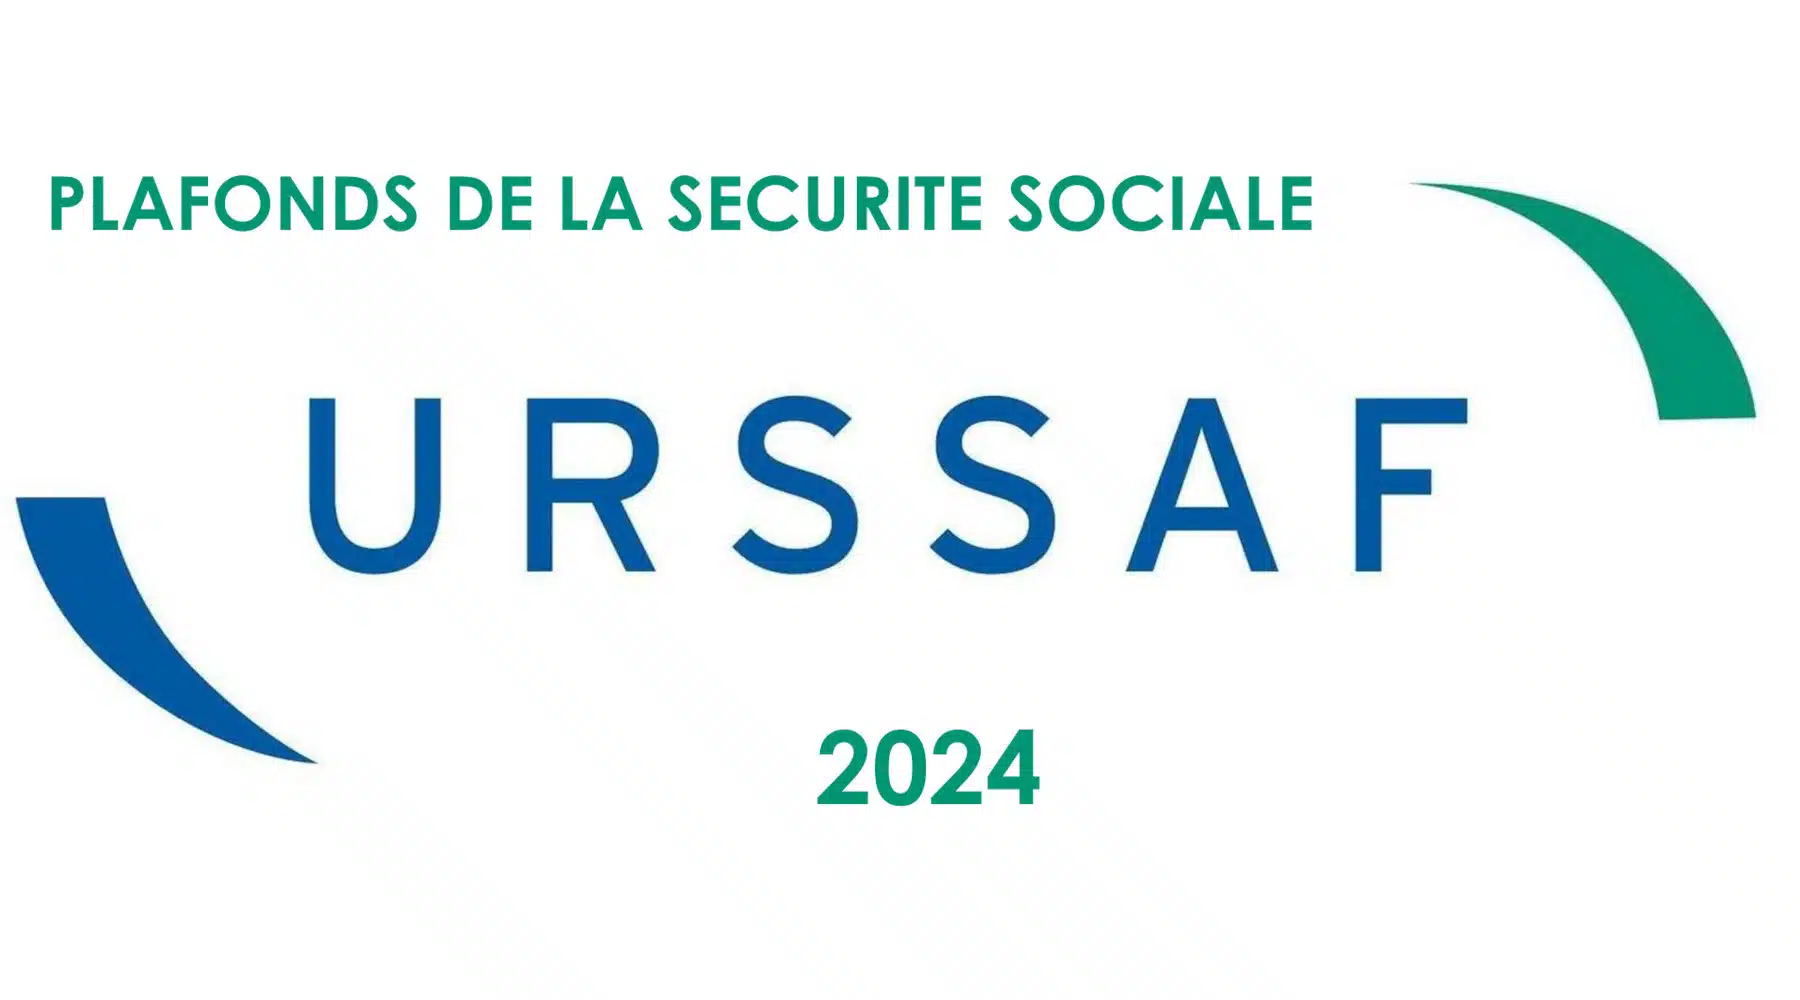 Plafonds de la Sécurité sociale en 2024